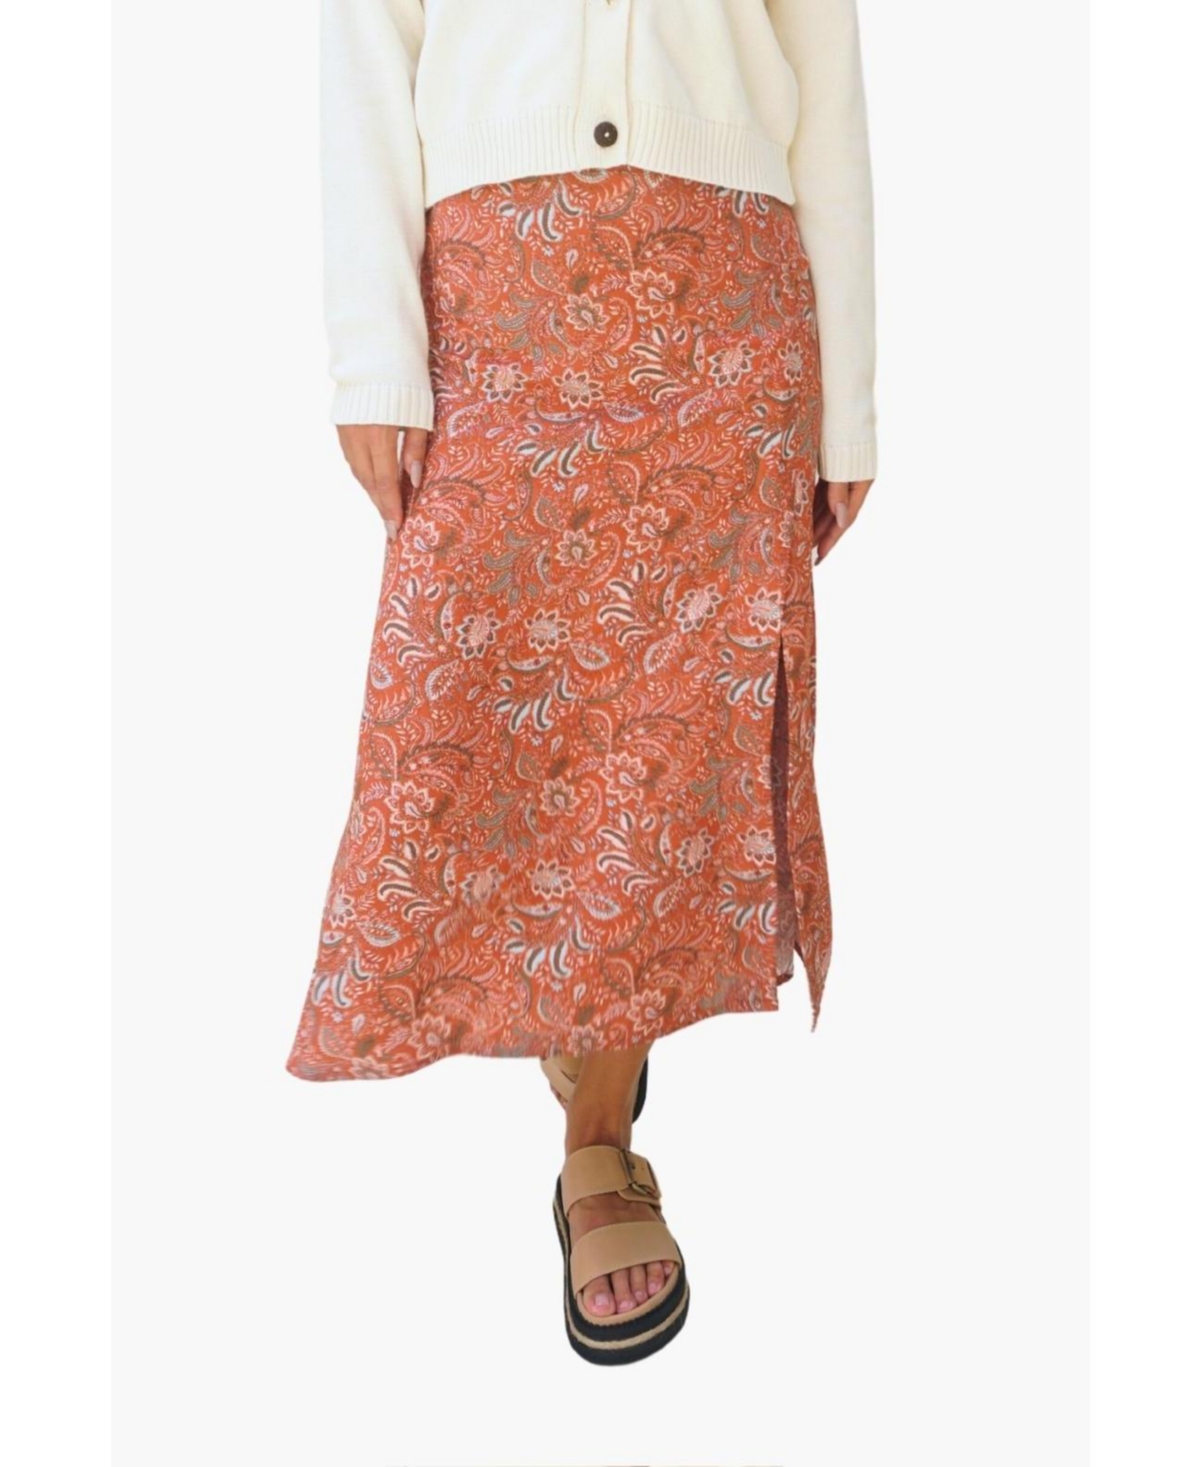 Women's Paisley Printed Avery Midi Skirt in Rust - Sedona paisley print